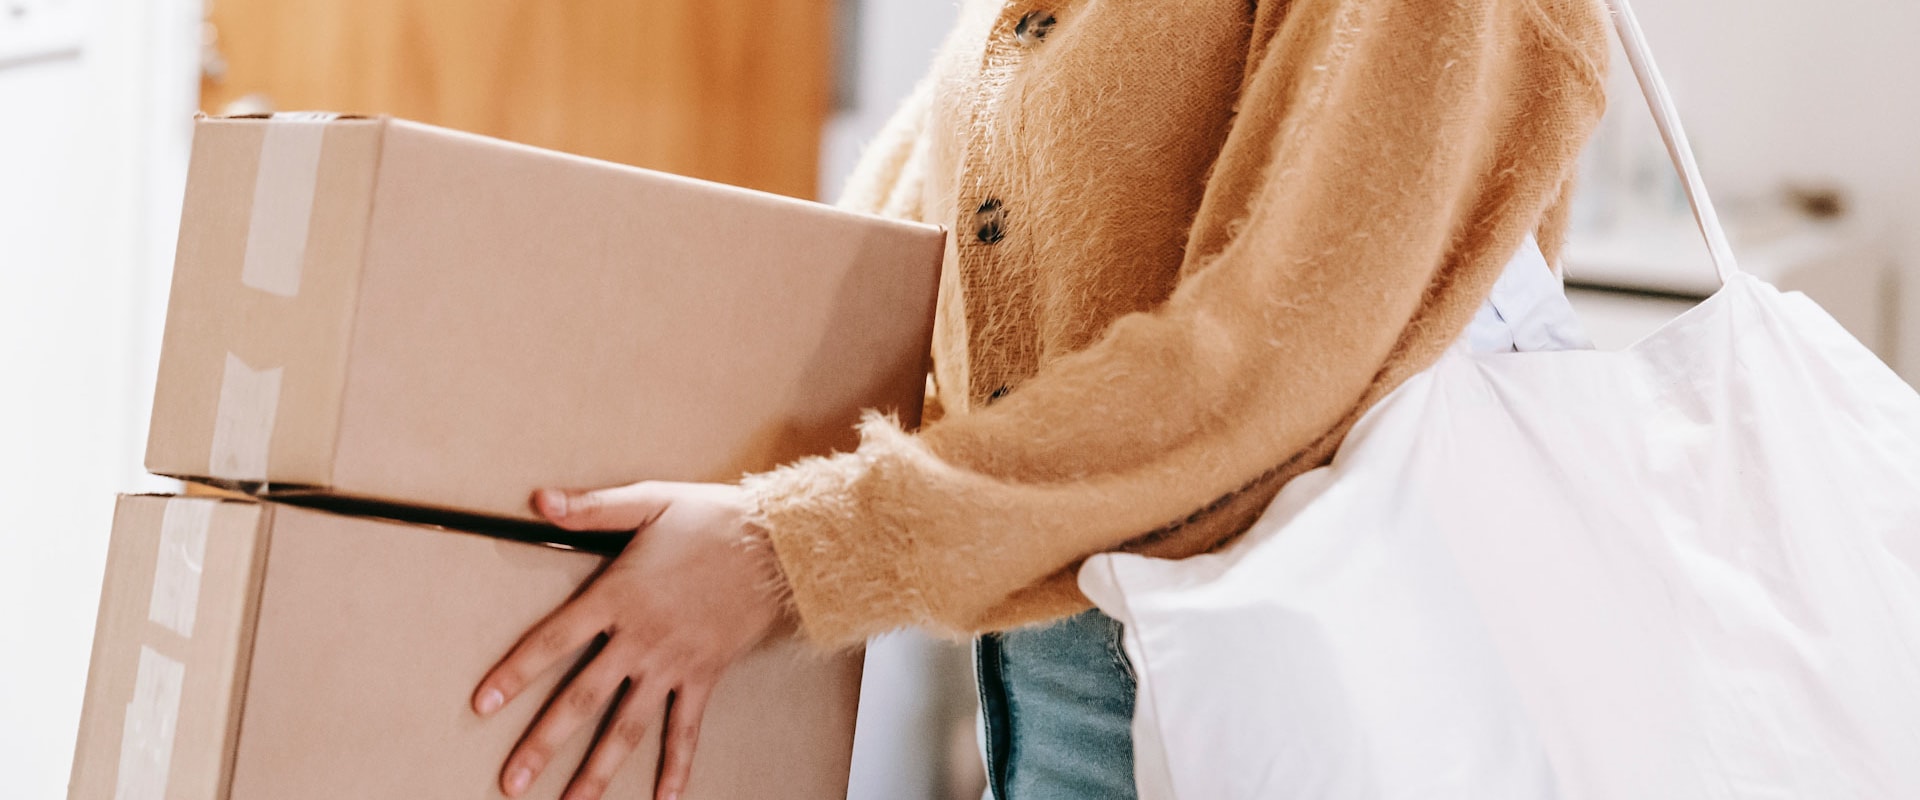 Cómo asegurar un buen sistema de envíos y entregas para tu tienda online